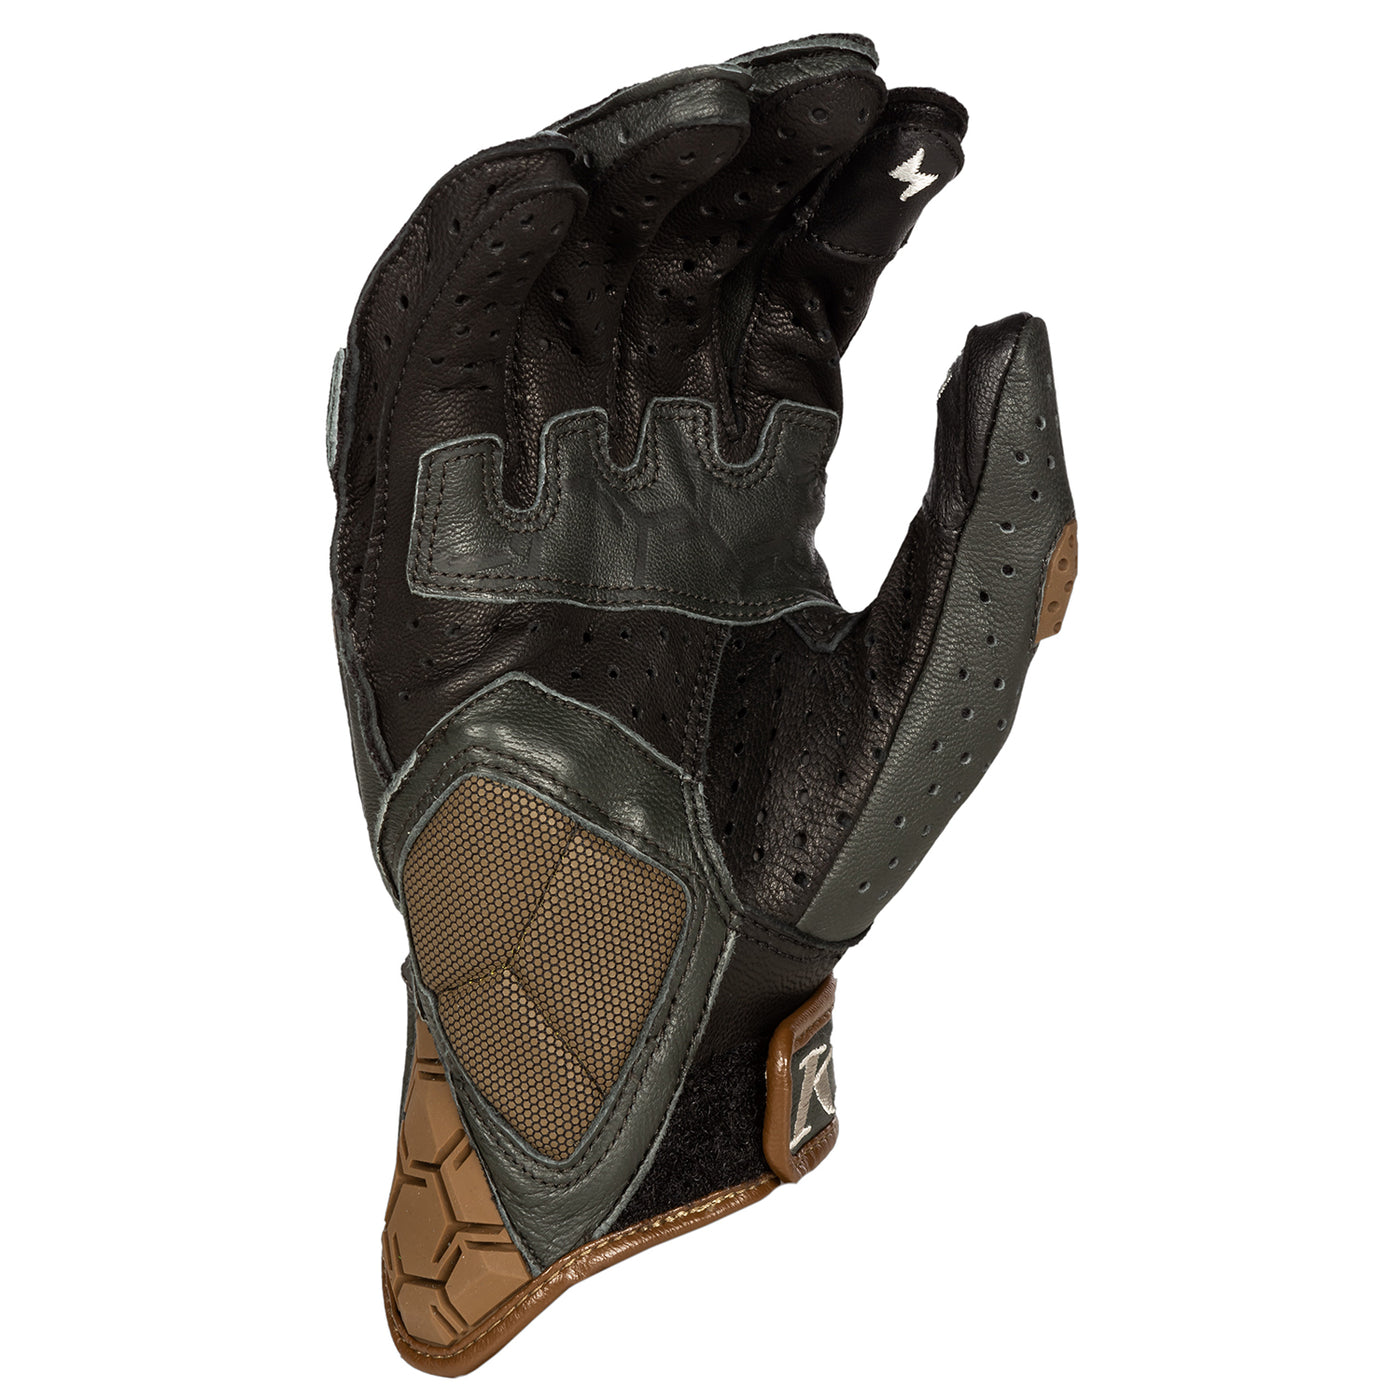 Klim Badlands Aero Pro Short Glove Peyote - Potter's Clay